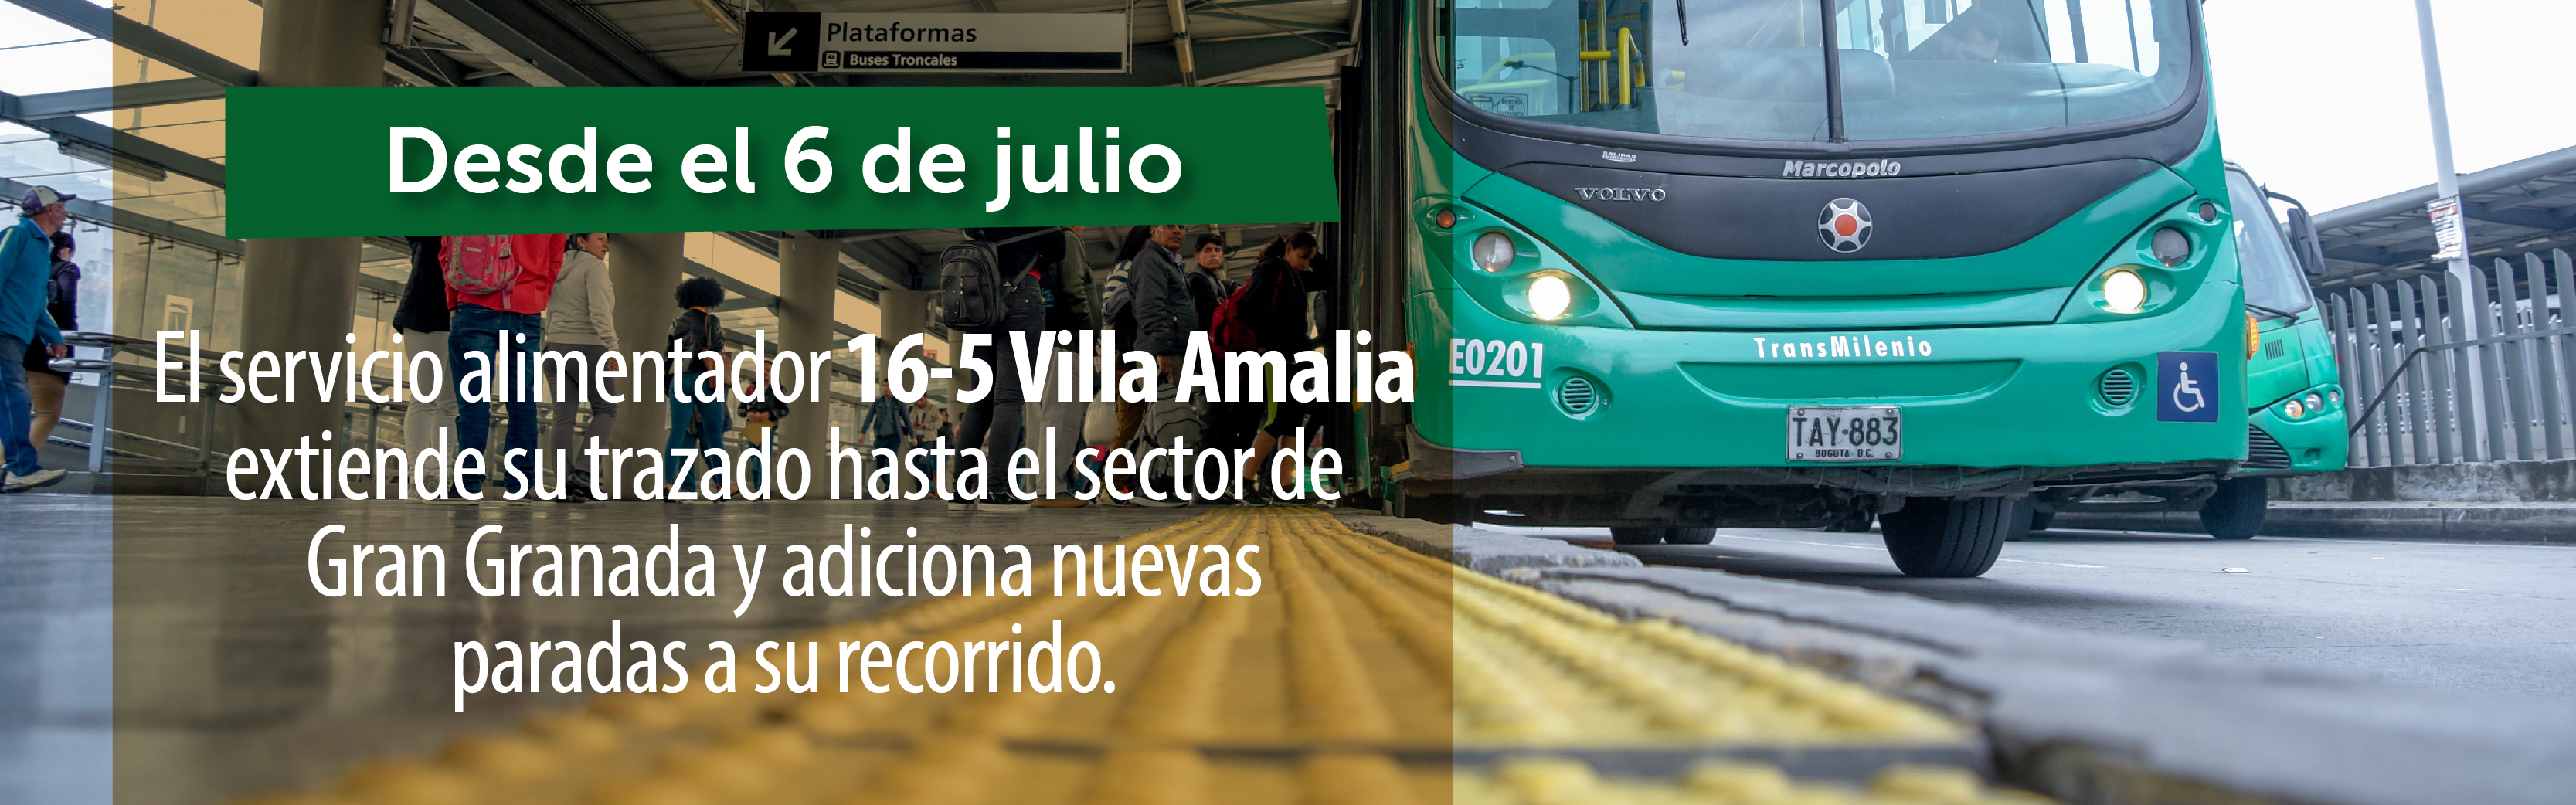 Servicio alimentador 16-5 Villa Amalia adiciona nuevas paradas a su recorrido